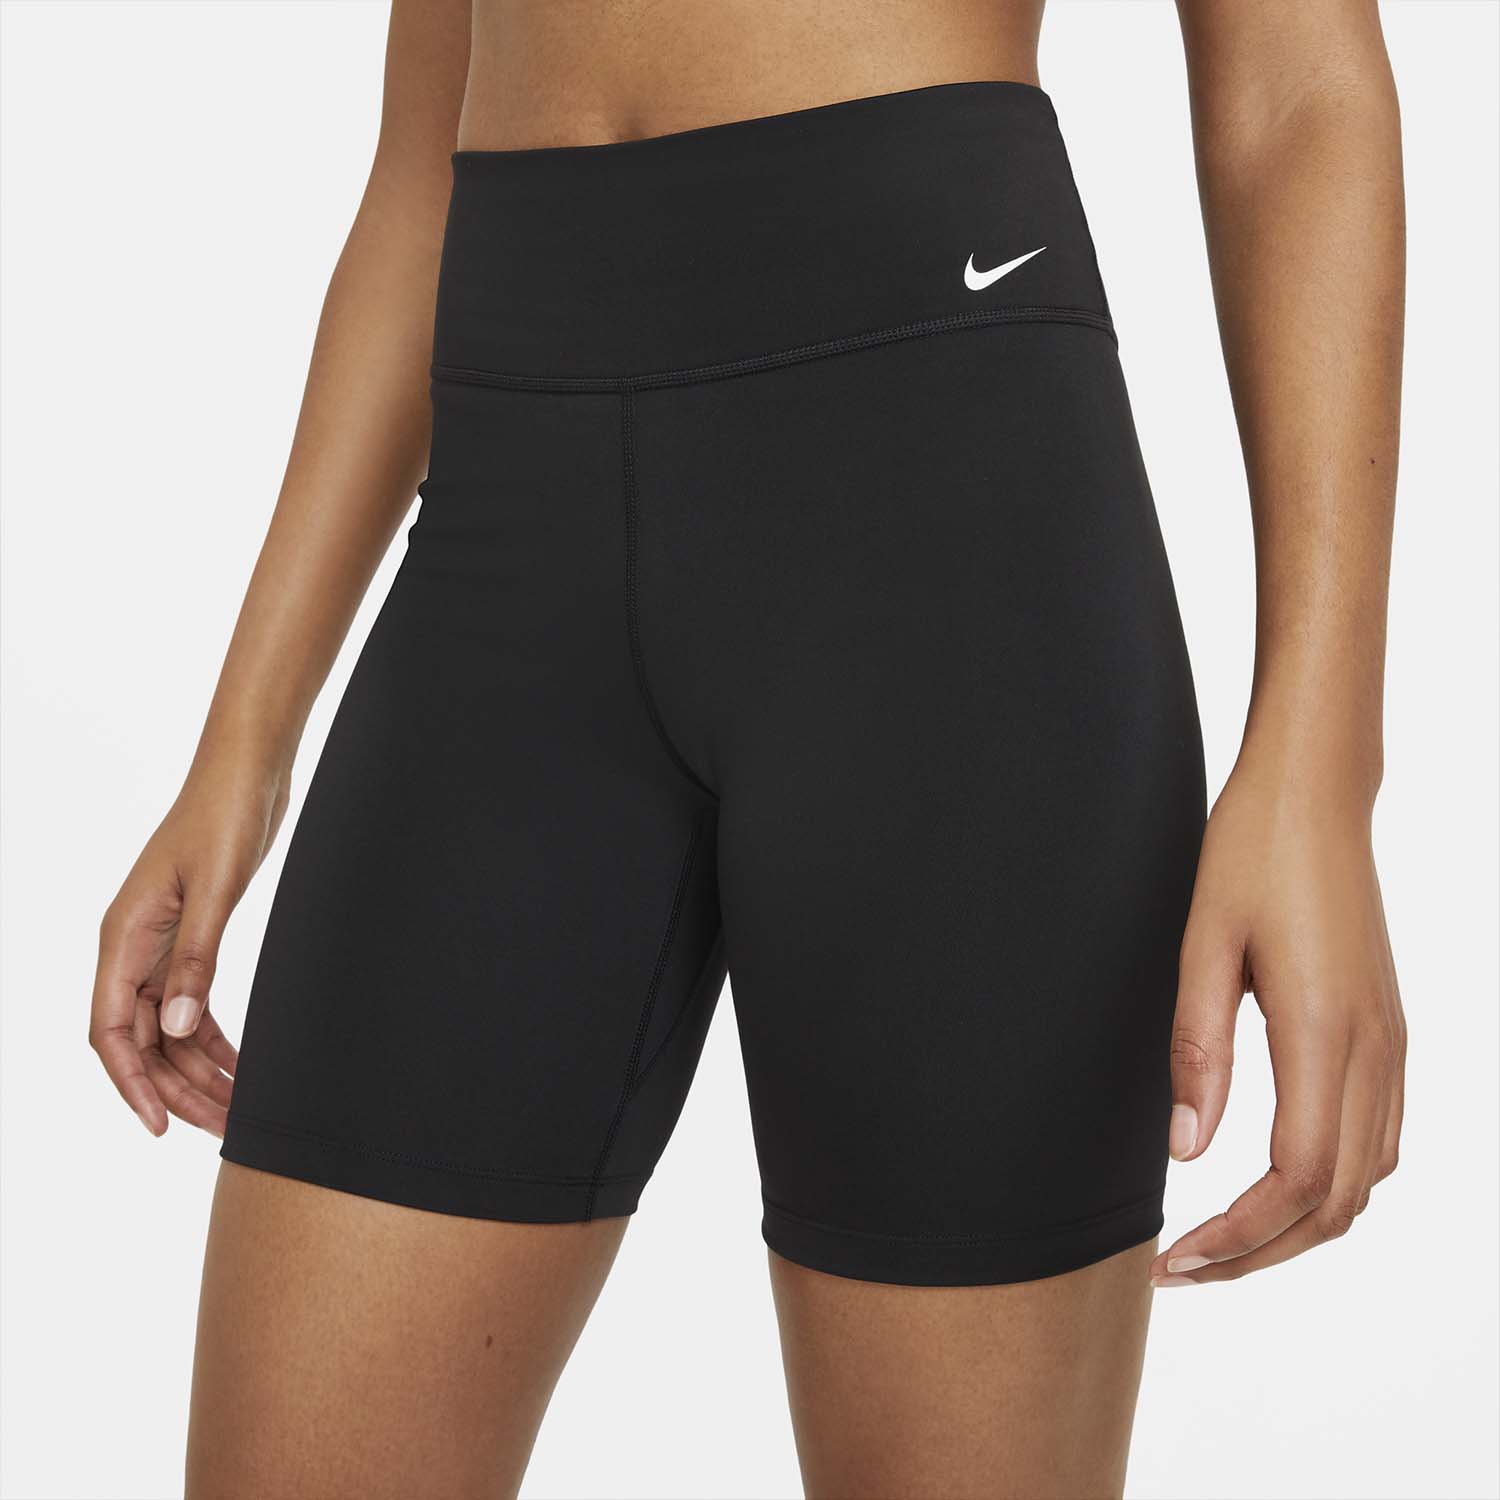 Nike Performance SHORT - Leggings - smoke grey/(black)/grey 